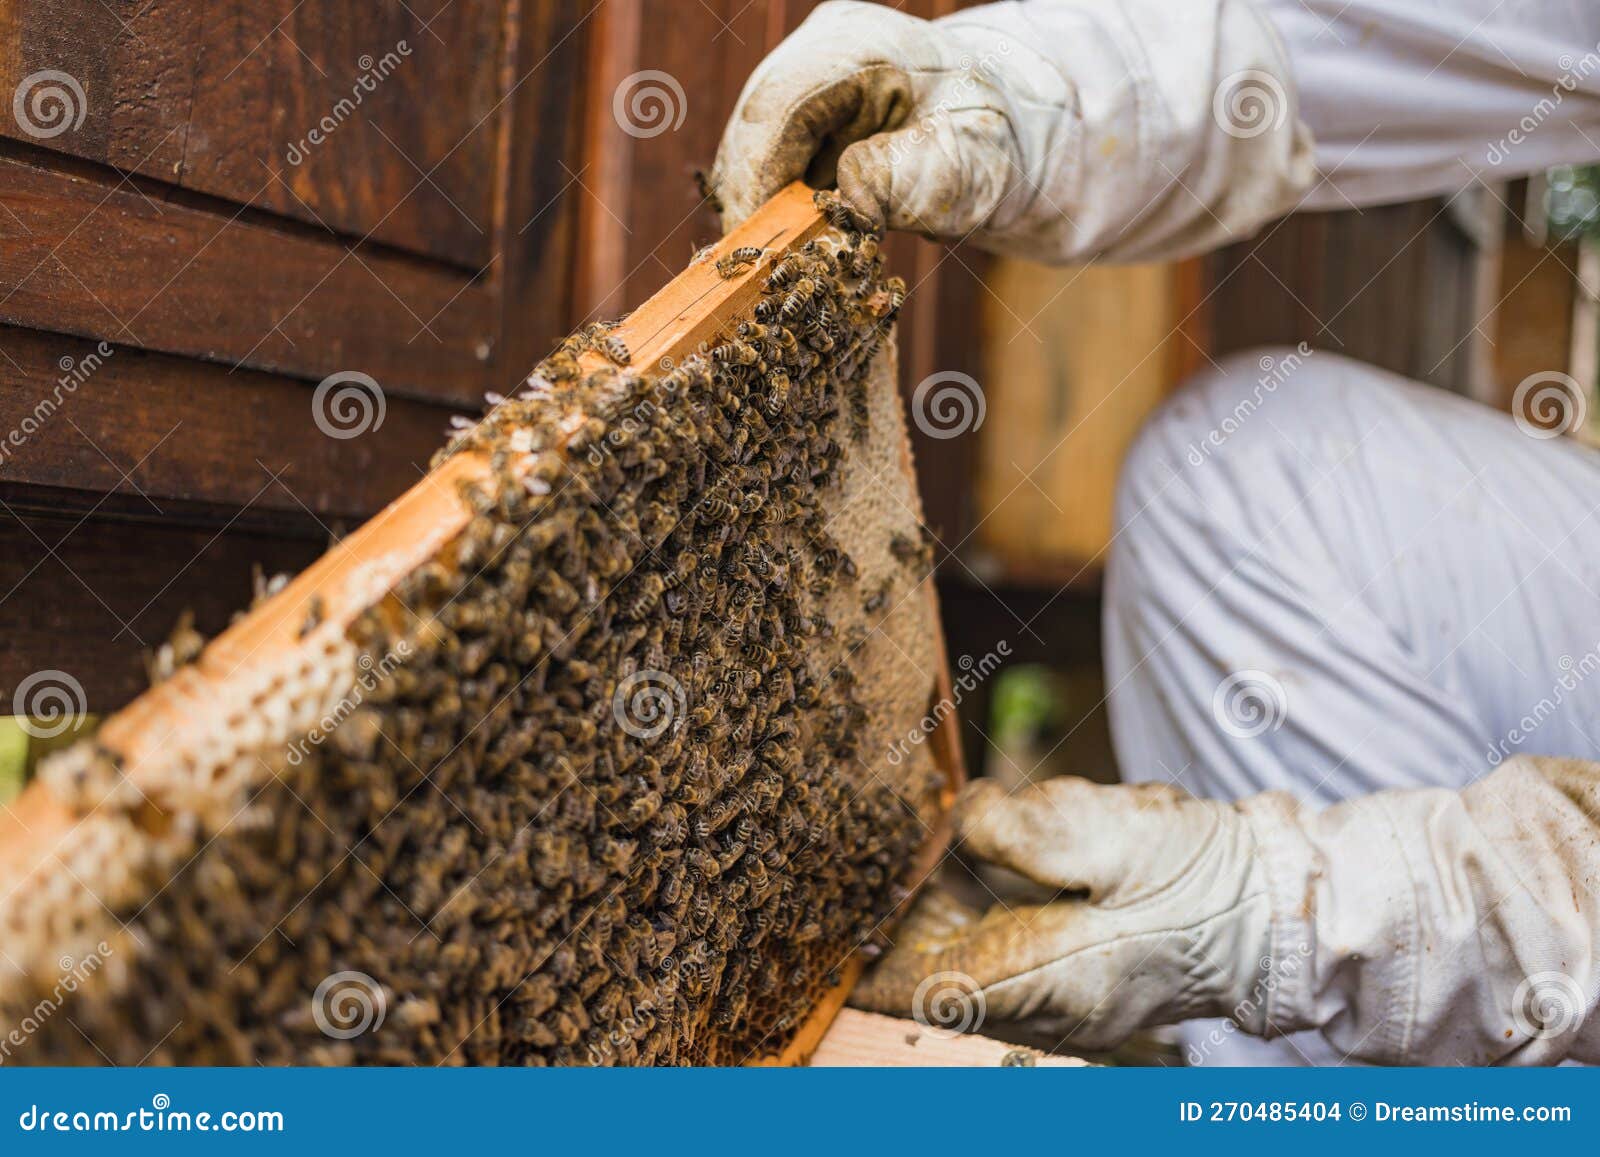 Amas D'abeilles Ouvrières Sur Une Image Macro D'ossature De Ruche En Bois  Photo stock - Image du nectar, apiculture: 270485404